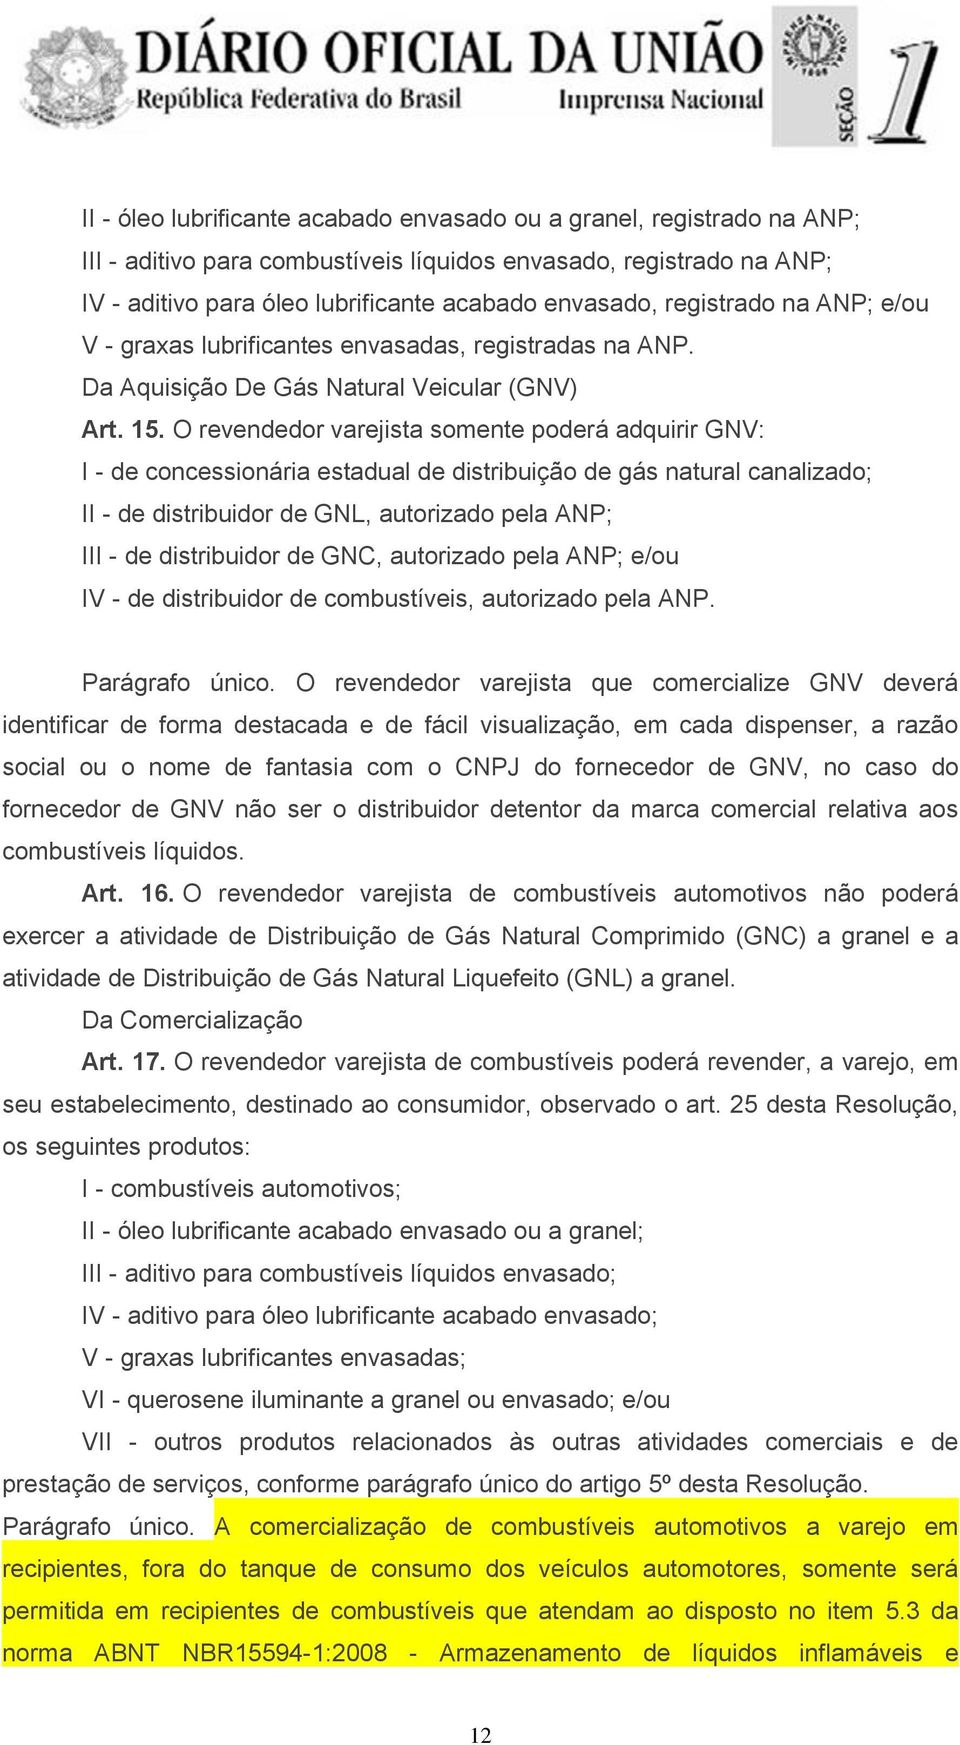 O revendedor varejista somente poderá adquirir GNV: I - de concessionária estadual de distribuição de gás natural canalizado; II - de distribuidor de GNL, autorizado pela ANP; III - de distribuidor